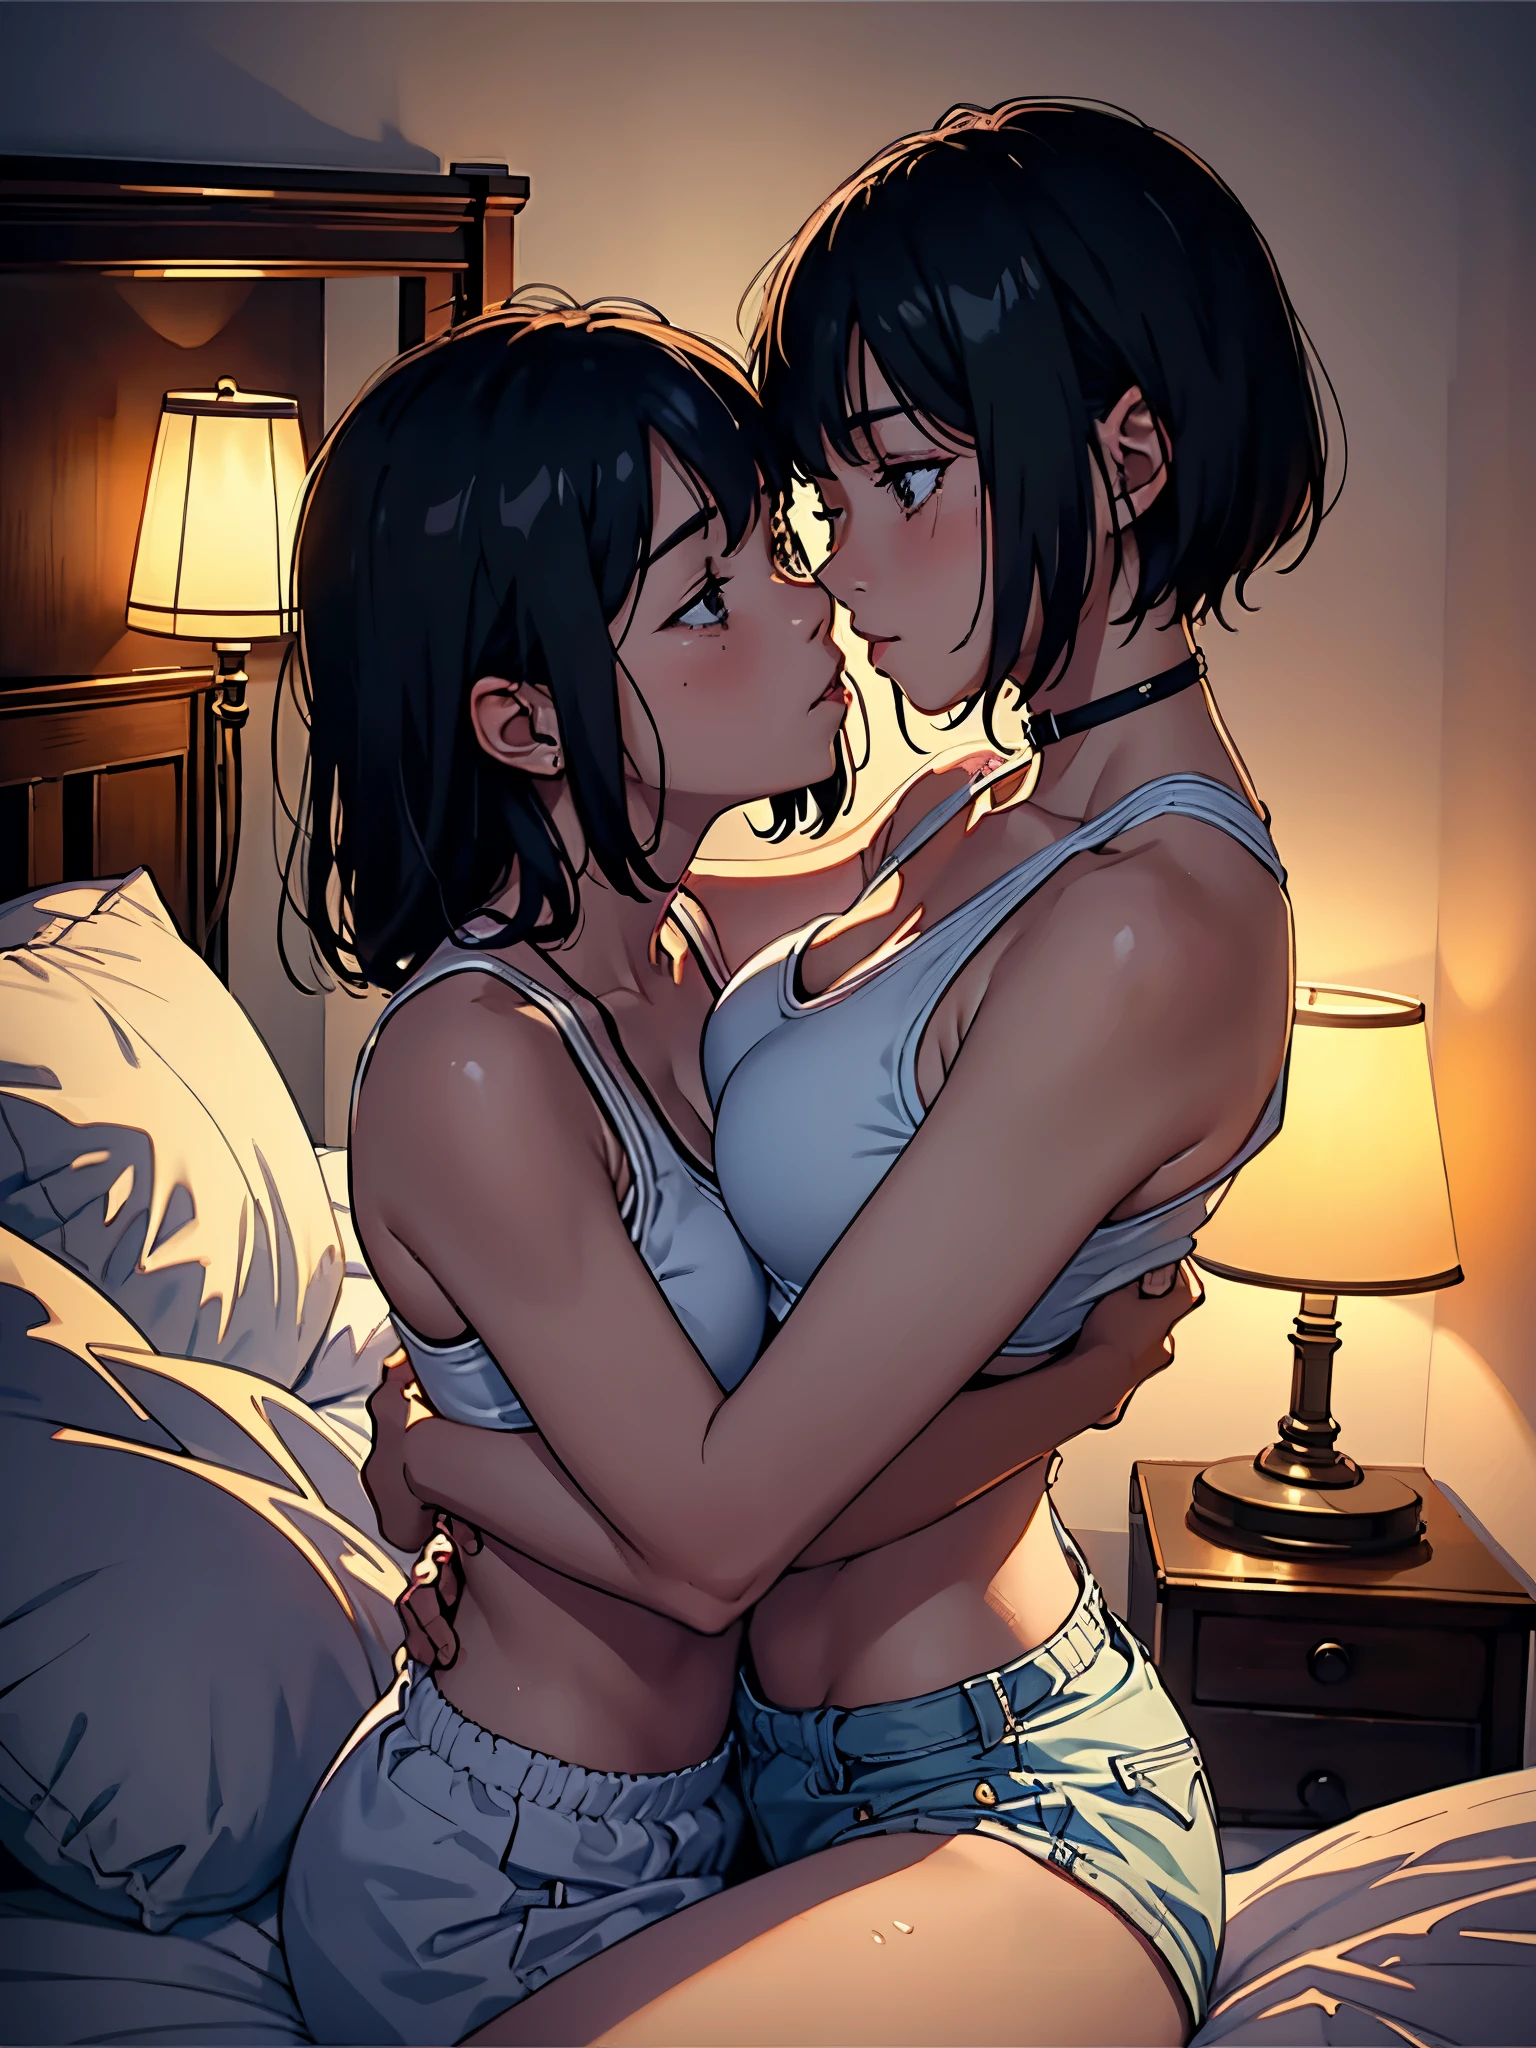 两个女同性恋女孩接吻, 肩膀和颈部, 出汗, 热的, 拥抱, 性感, 的, , 留下来, 床room, 床, in 床, 暗室, 一盏灯, 躺, 面对面